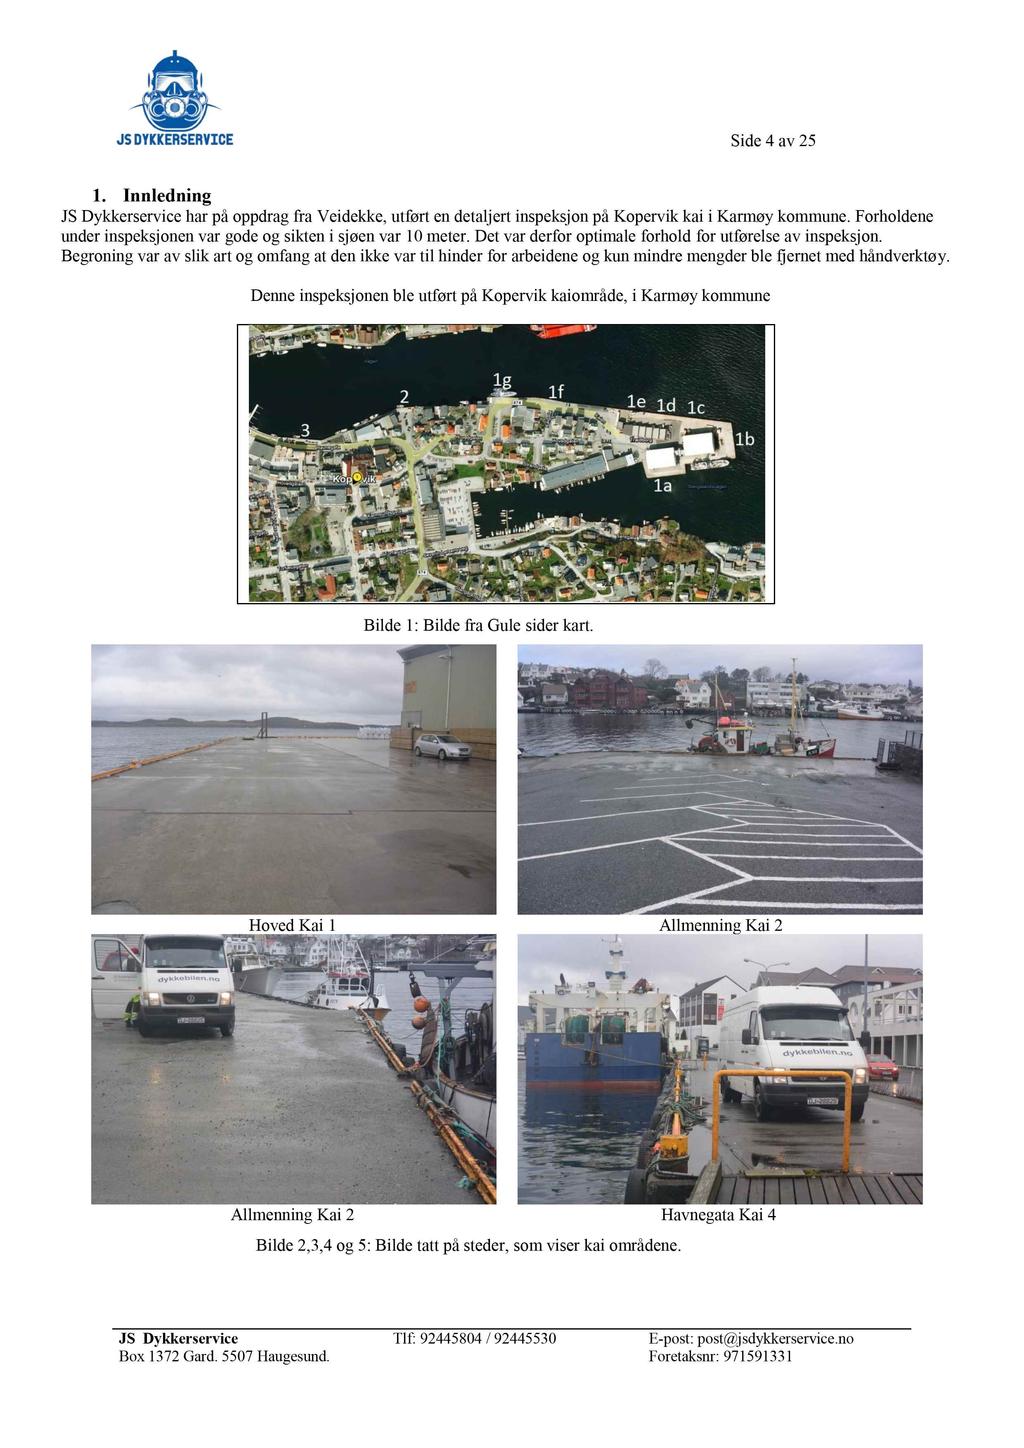 Side 4 av 25 1. Innledning JS Dykkerservice har på oppdrag fra Veidekke, utført en detaljert inspeksjon på Kopervik kai i Karmøy kommune.